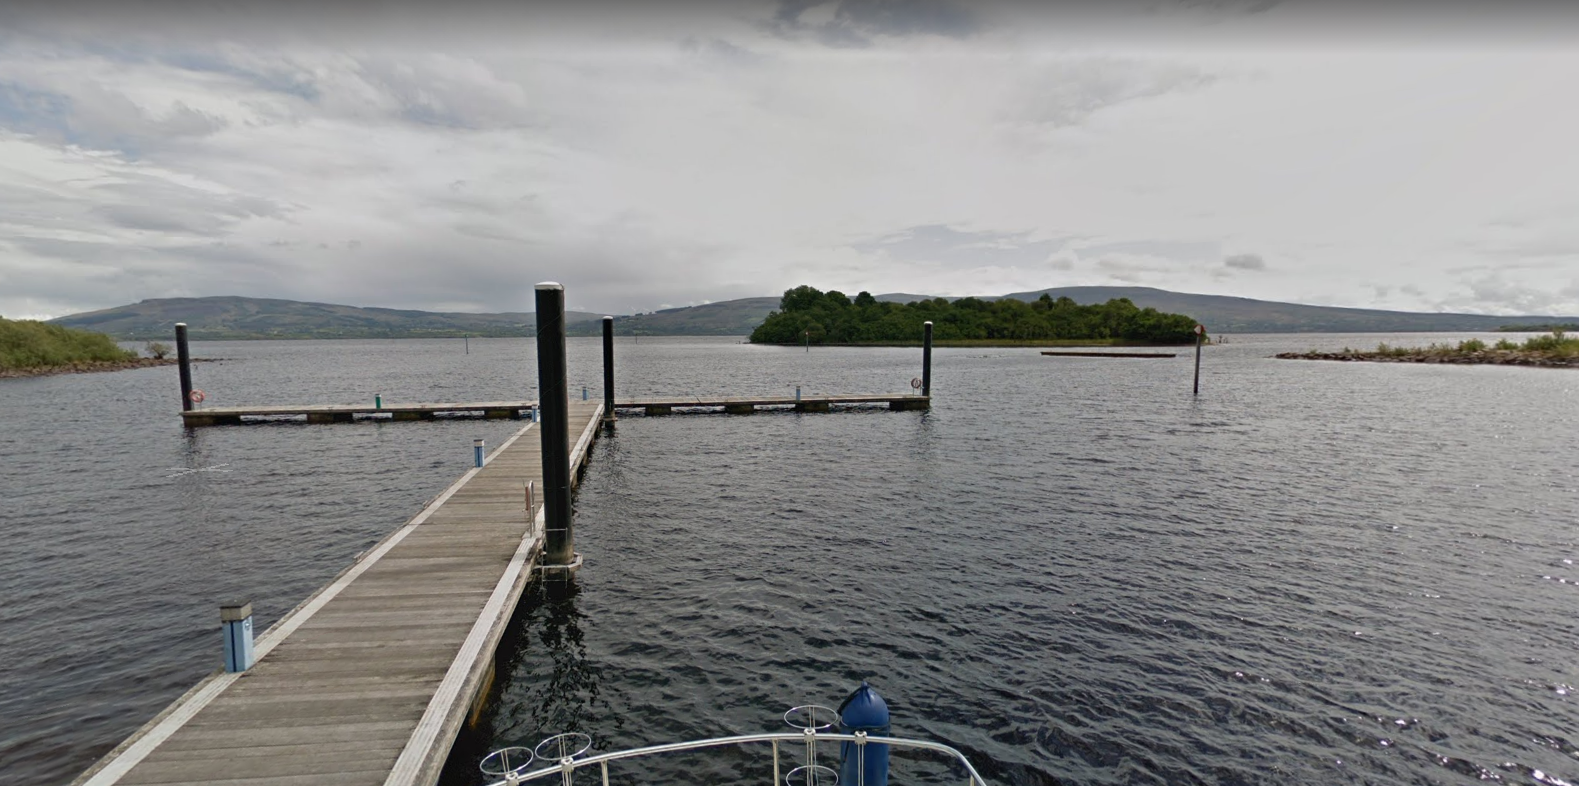 Spencer Harbour in Drumkeeran, Lough Allen, County Leitrim. Image: Google